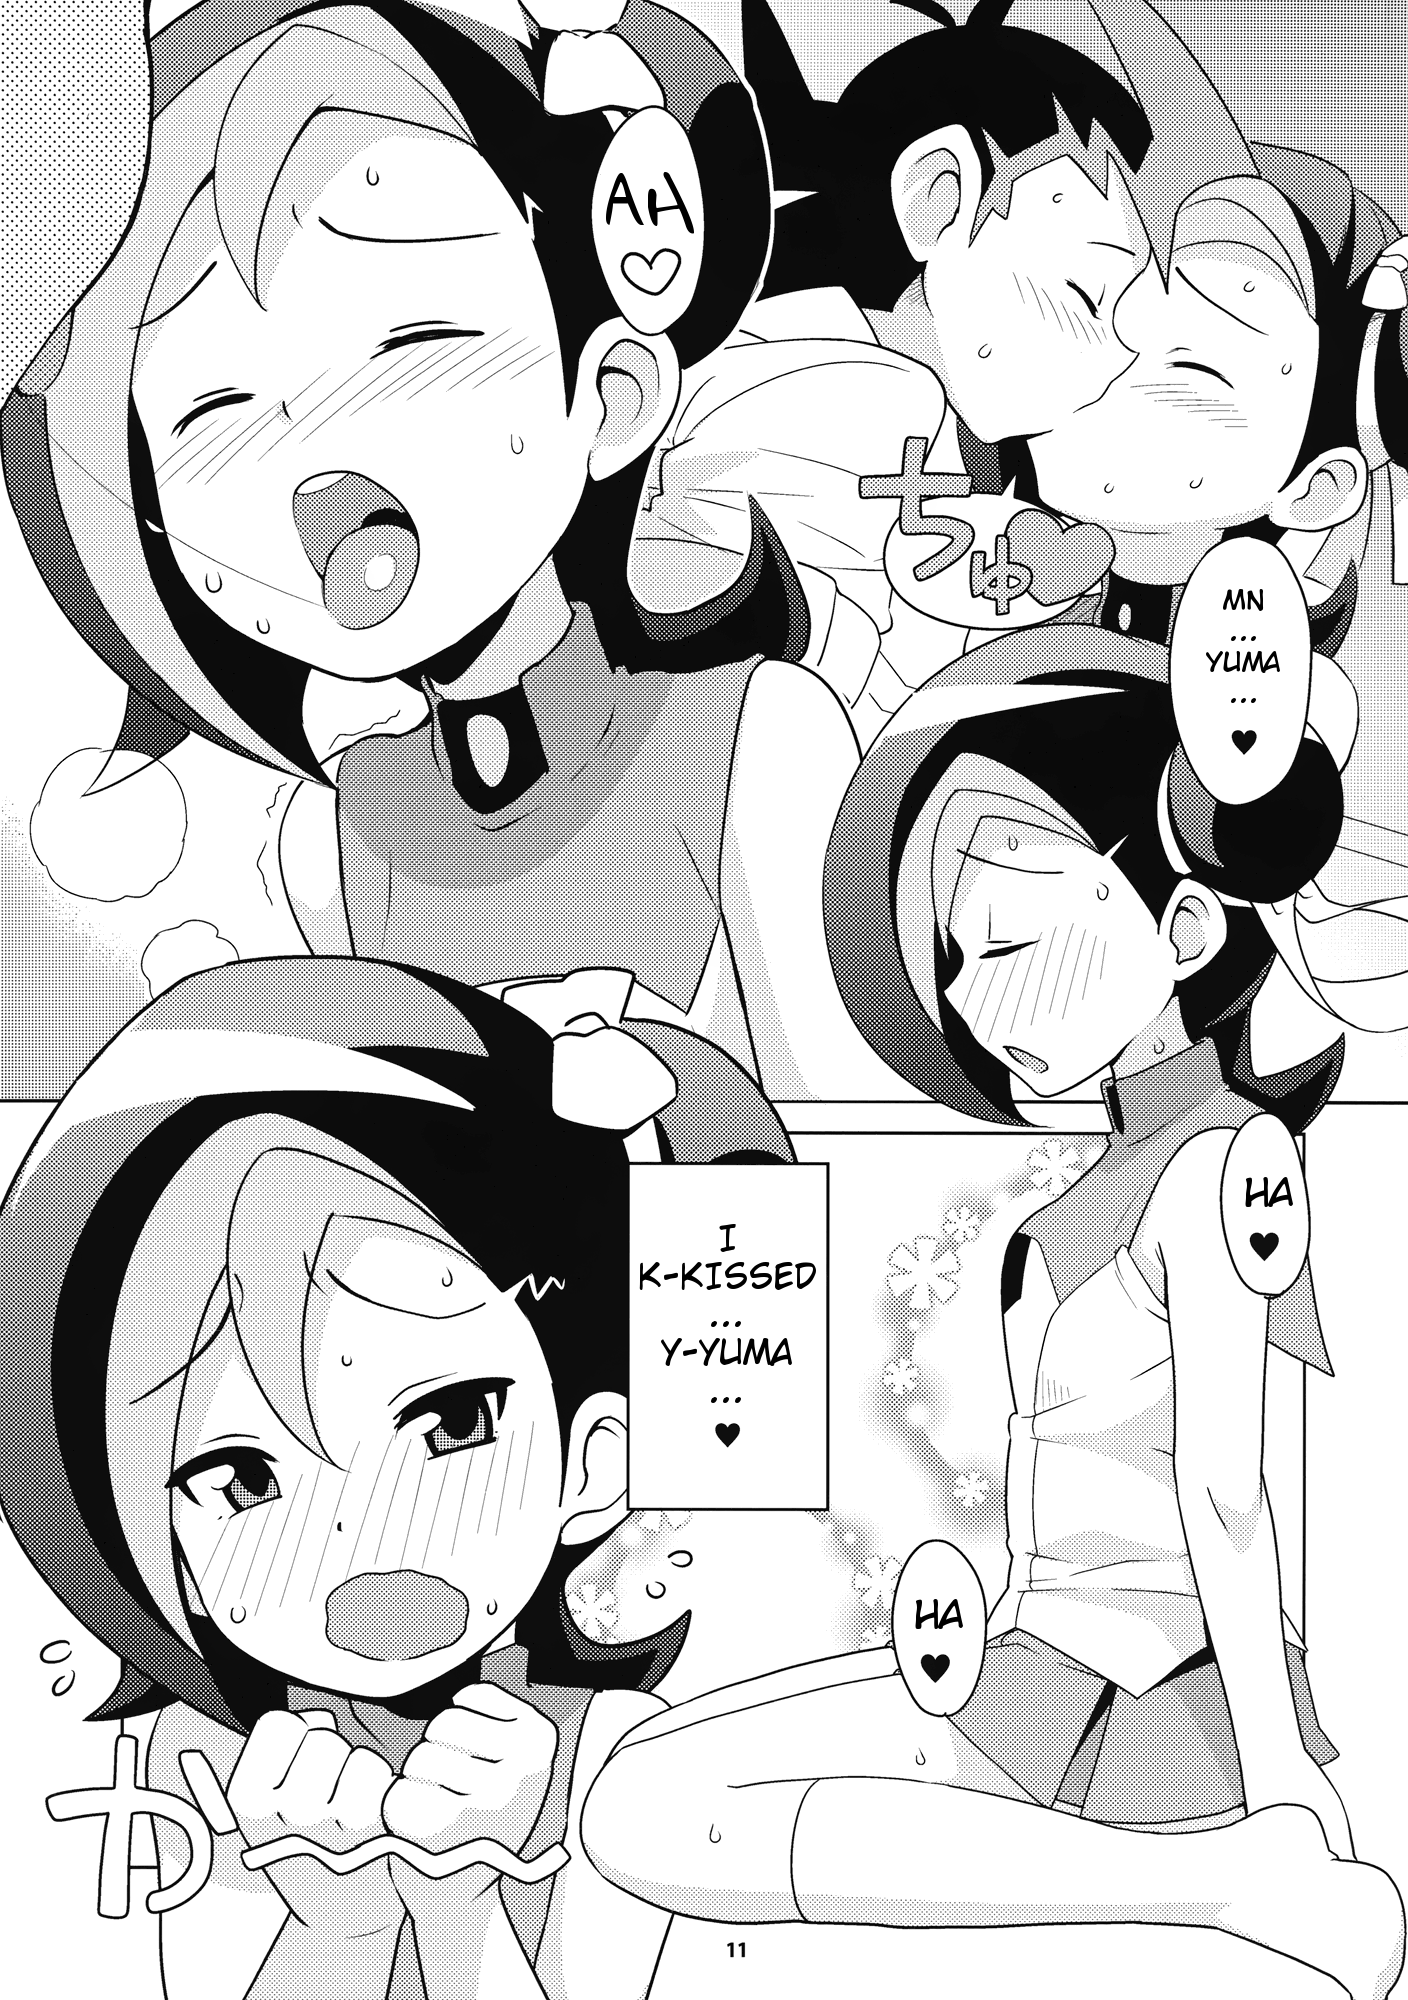 Kotori Club hentai manga picture 11